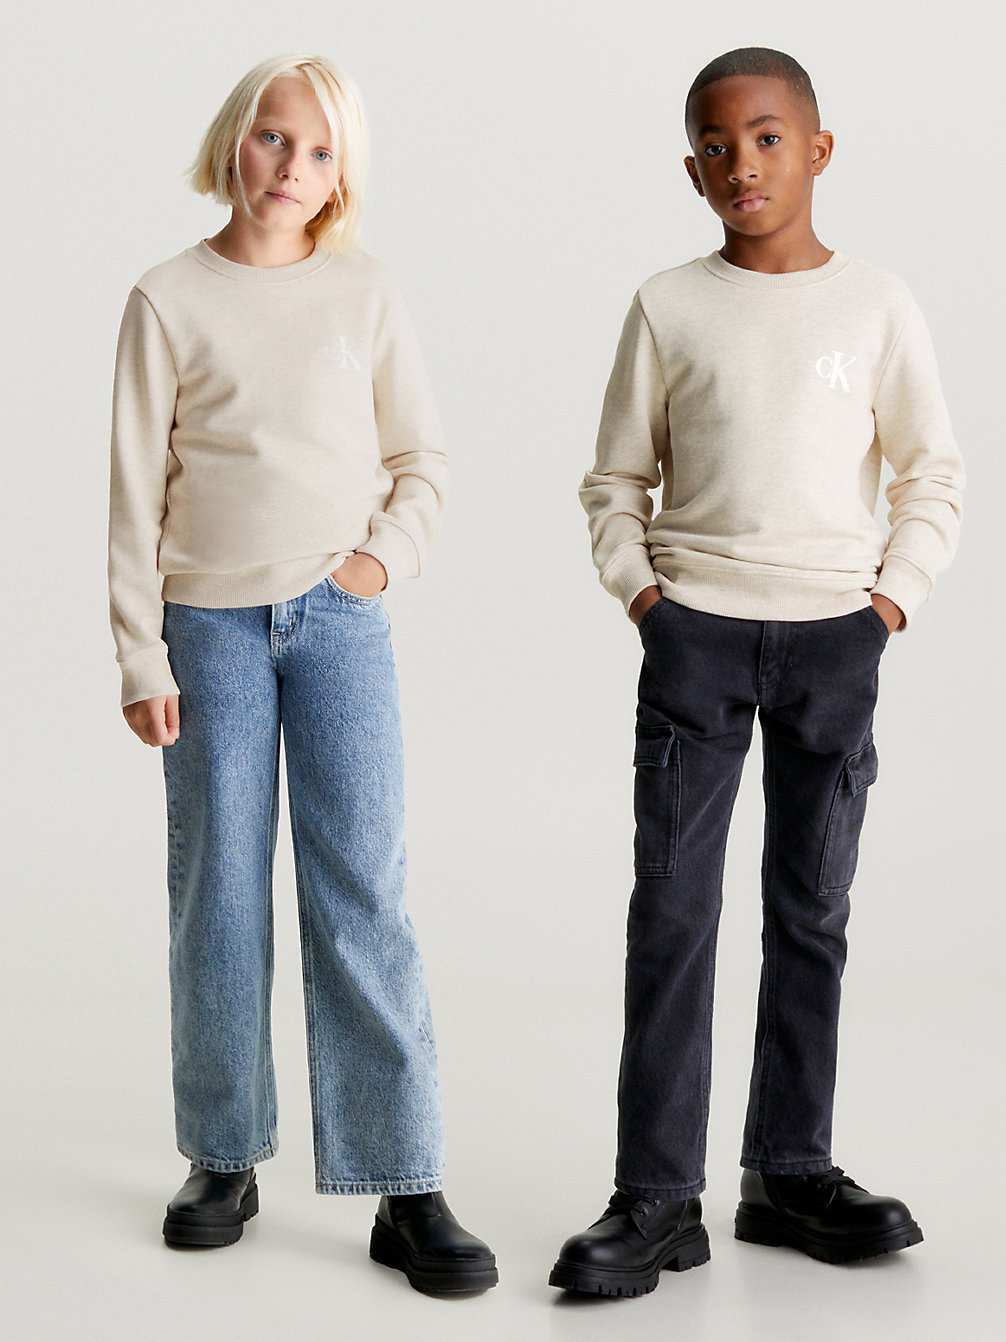 VANILLA HEATHER Sweatshirt Für Kinder undefined Kids Unisex Calvin Klein